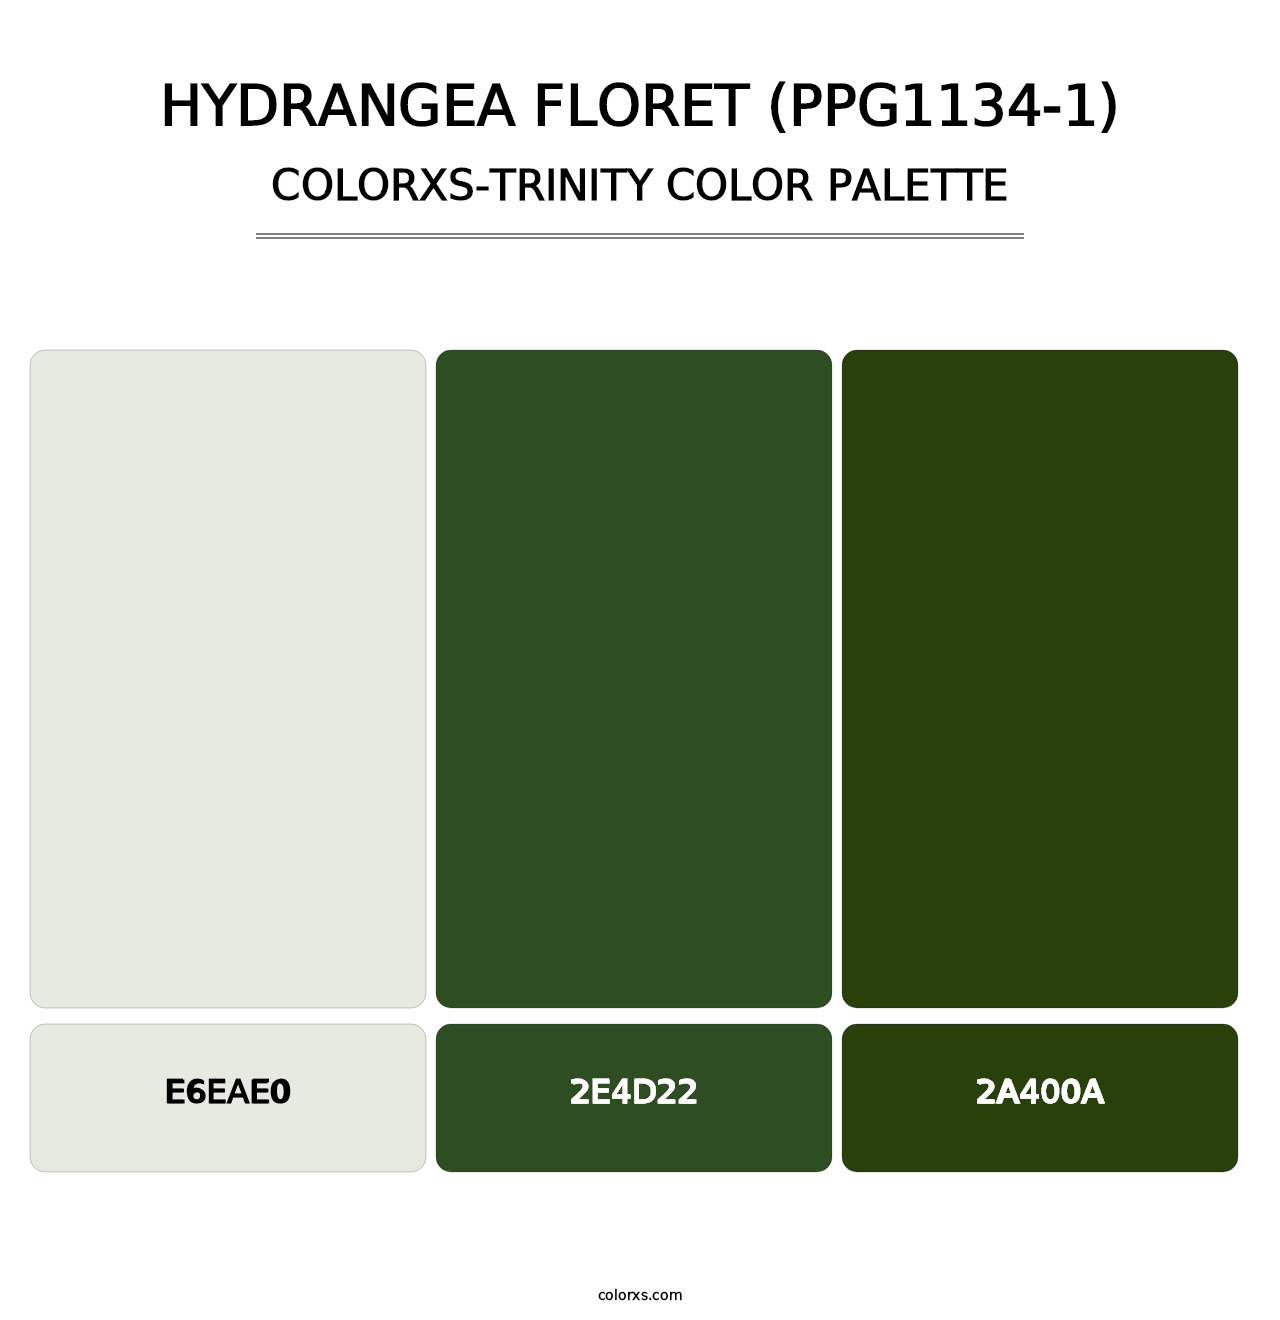 Hydrangea Floret (PPG1134-1) - Colorxs Trinity Palette